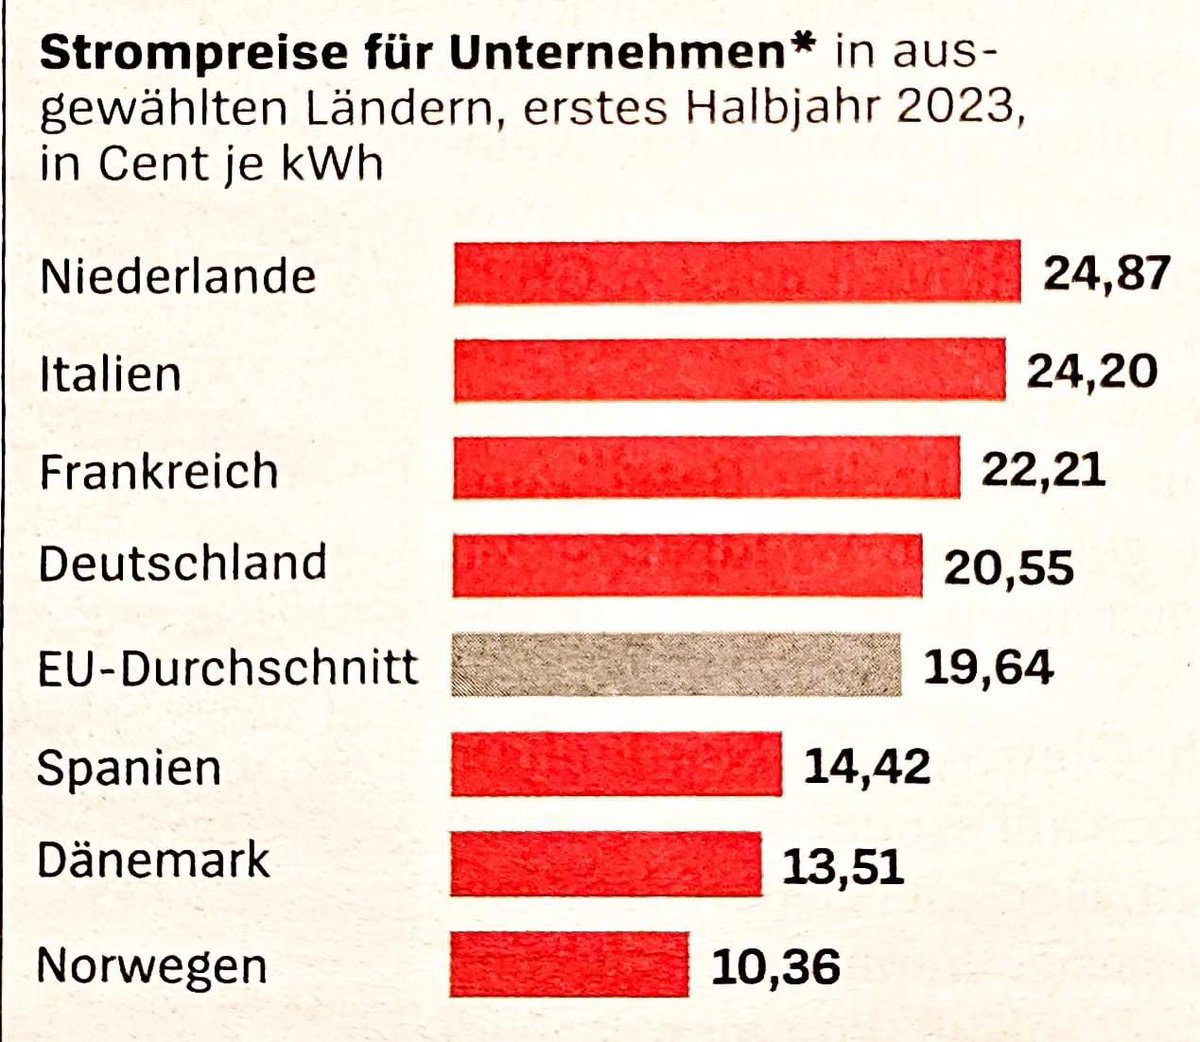 Fakten statt Vorurteile bitte: Nein, Deutschland hat nicht die höchsten Strompreise für Unternehmen. Die günstigsten Preise gibt es in Norwegen und Dänemark, beides Länder mit fast 100% erneuerbaren Energien im Strommix.